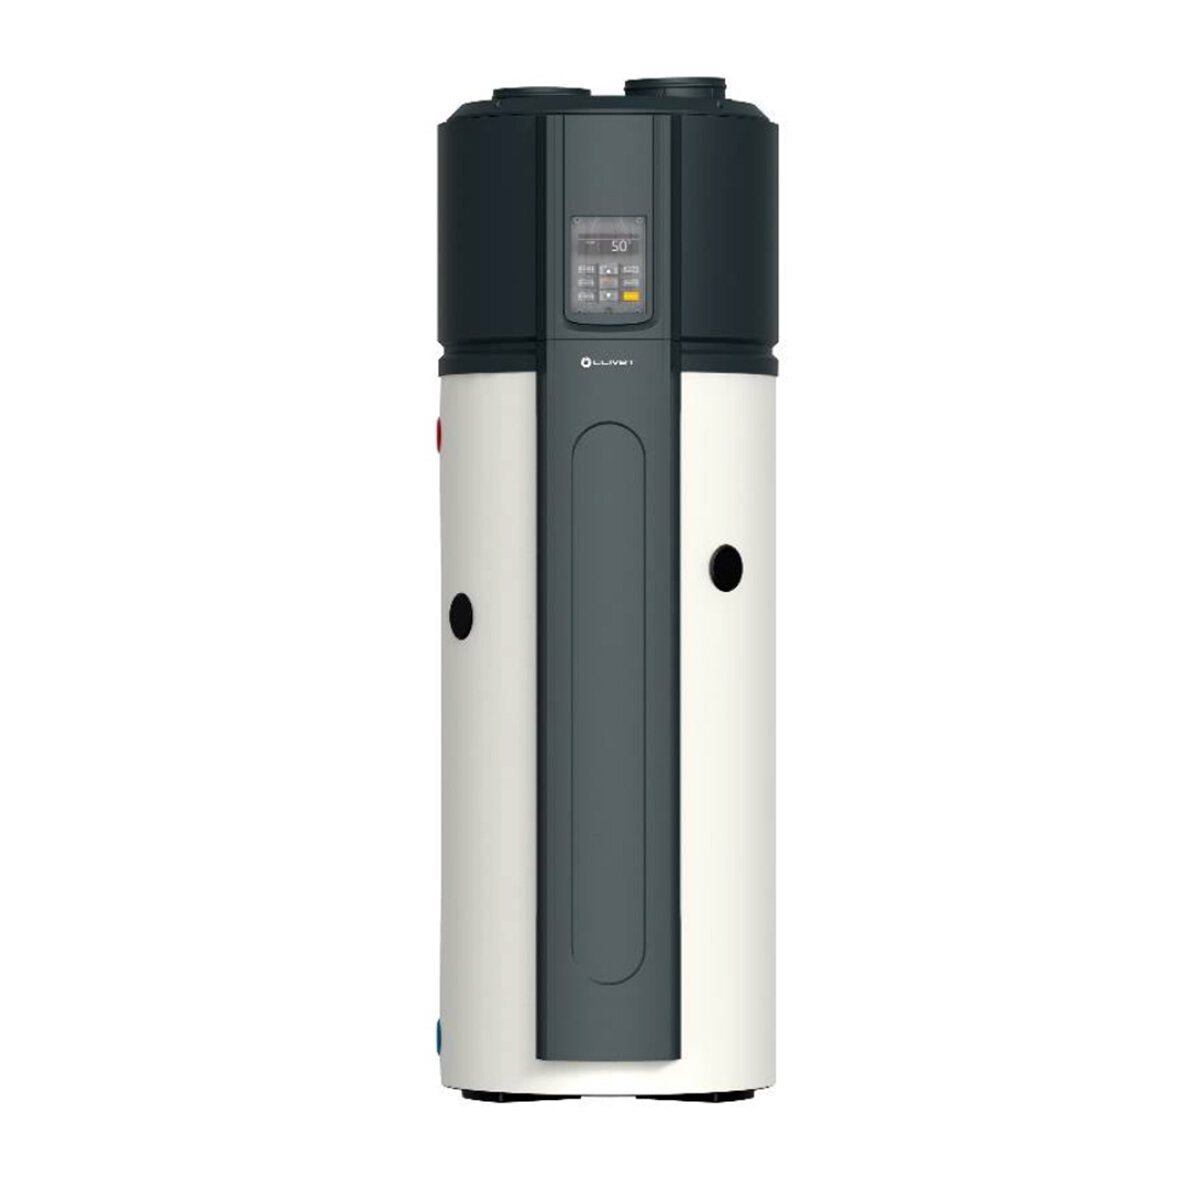 Clivet AQUA Plus SWAN-2 300 heat pump water heater